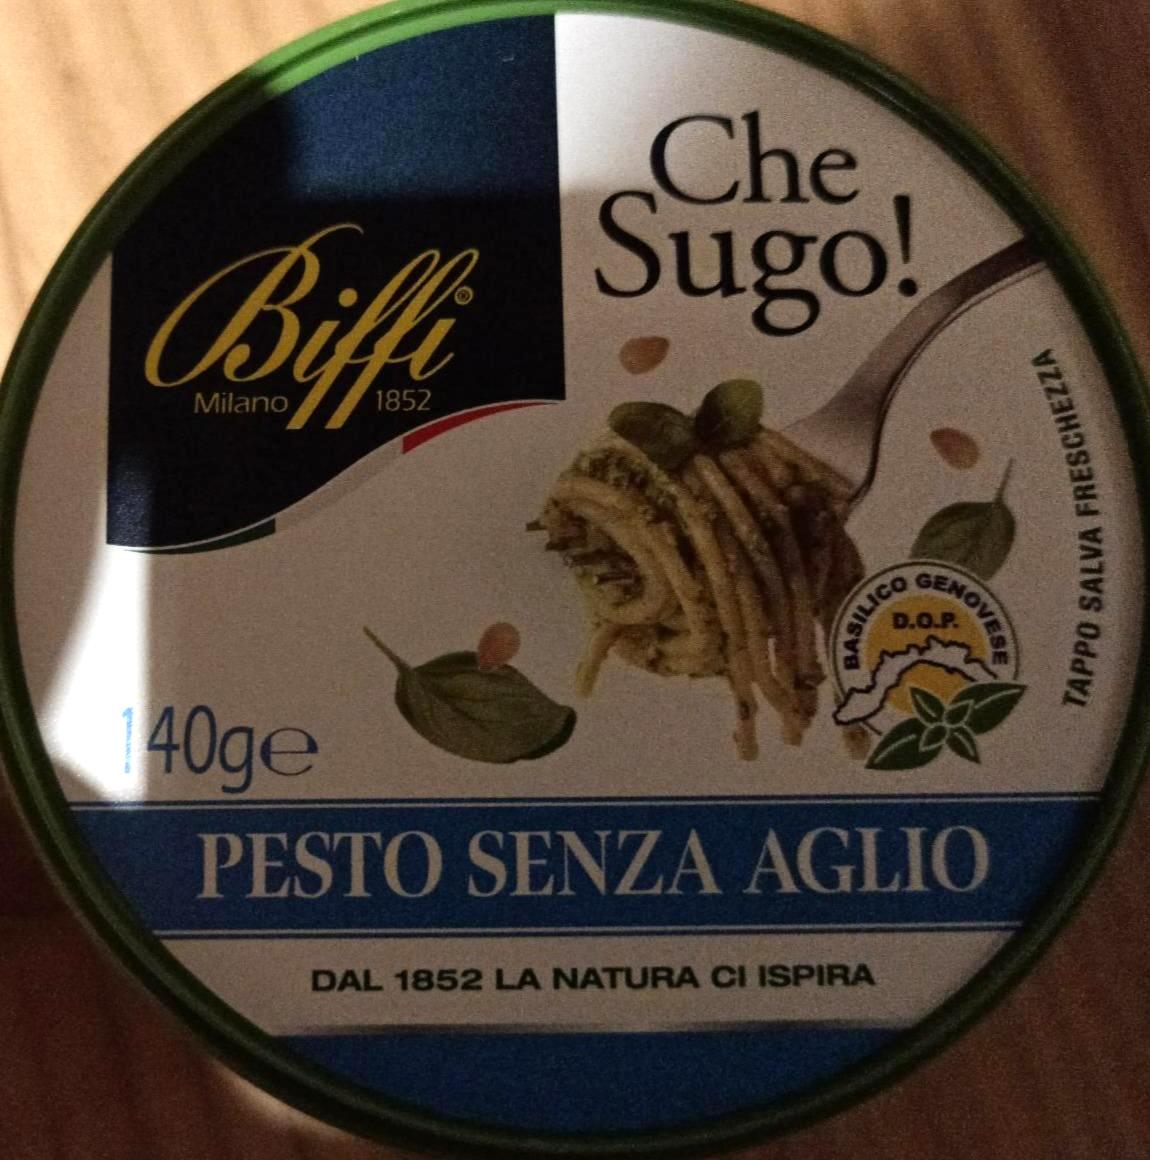 Fotografie - Pesto senza aglio Che Sugo! Biffi